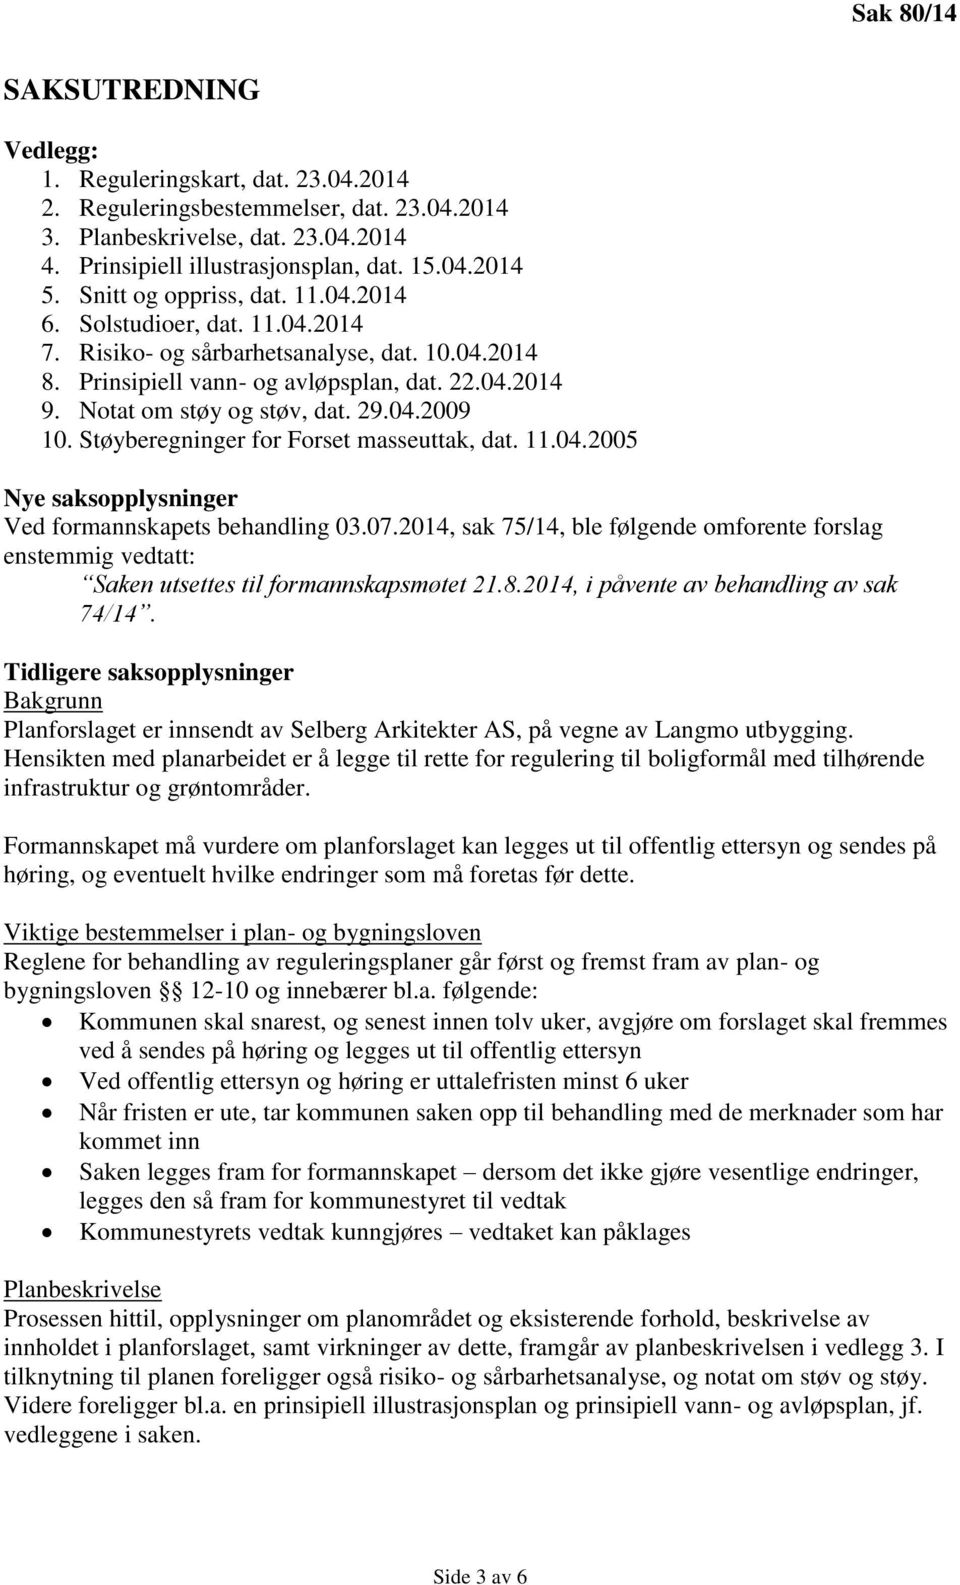 29.04.2009 10. Støyberegninger for Forset masseuttak, dat. 11.04.2005 Nye saksopplysninger Ved formannskapets behandling 03.07.